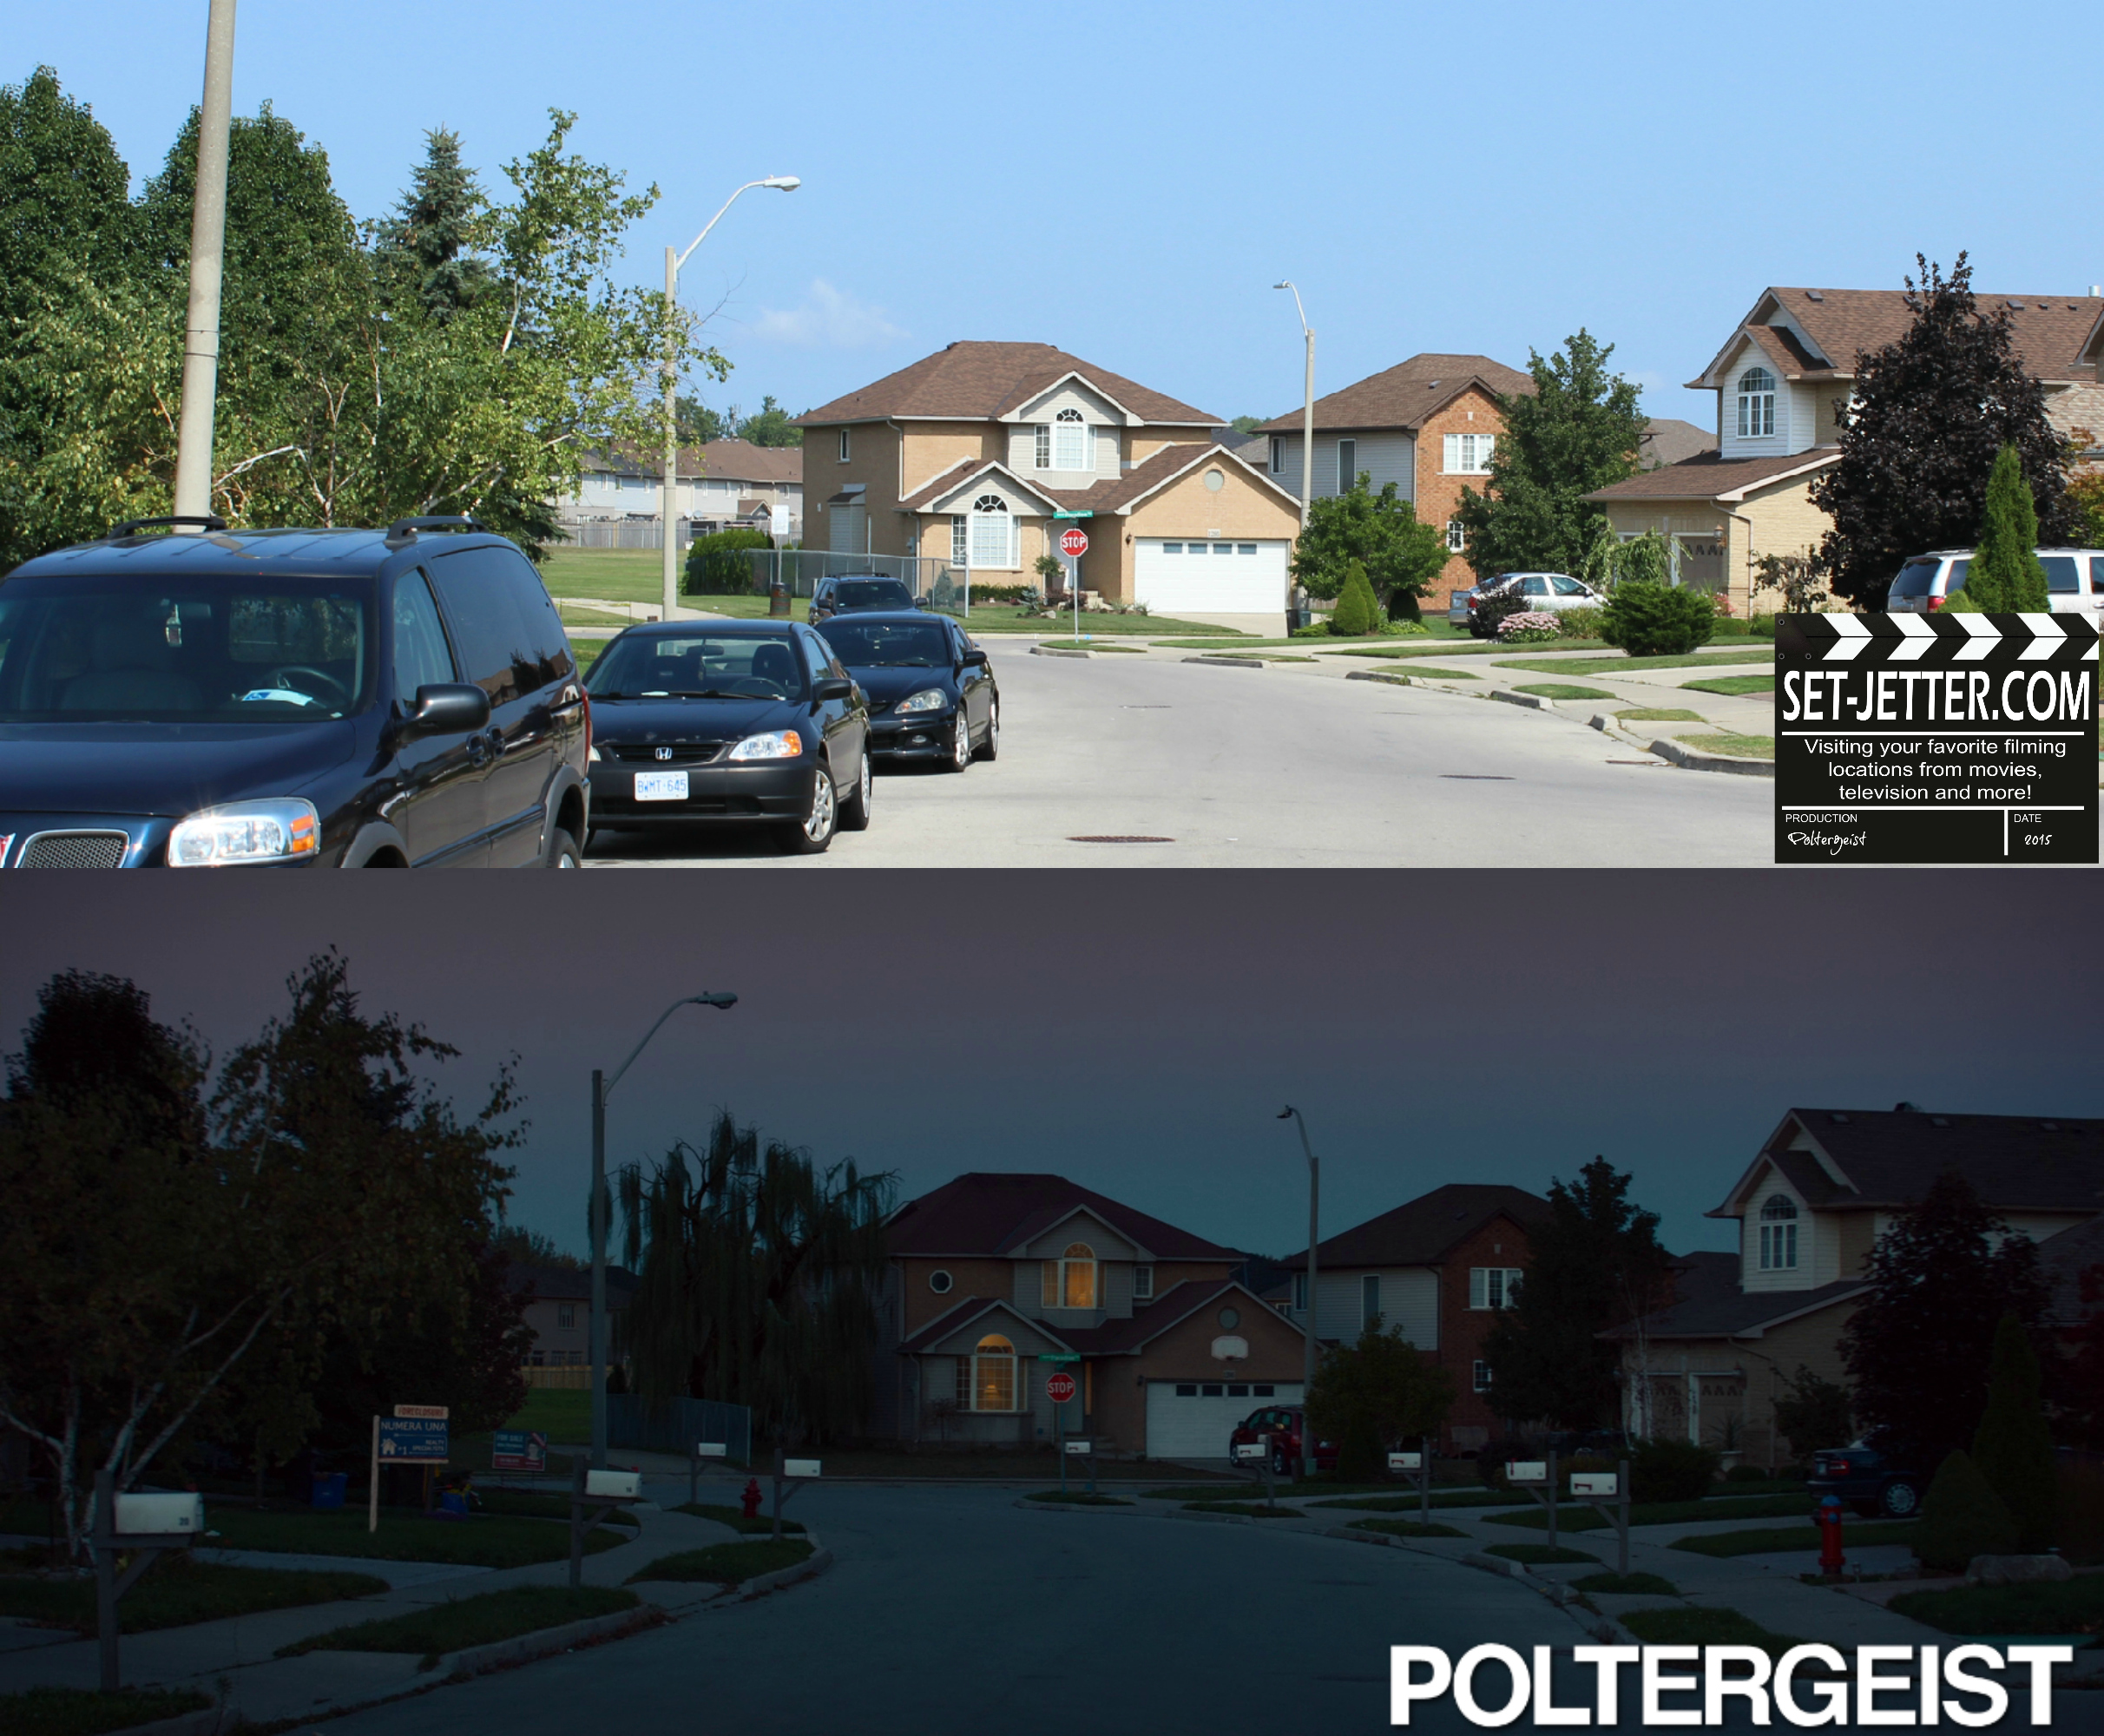 Poltergeist comparison 48.jpg